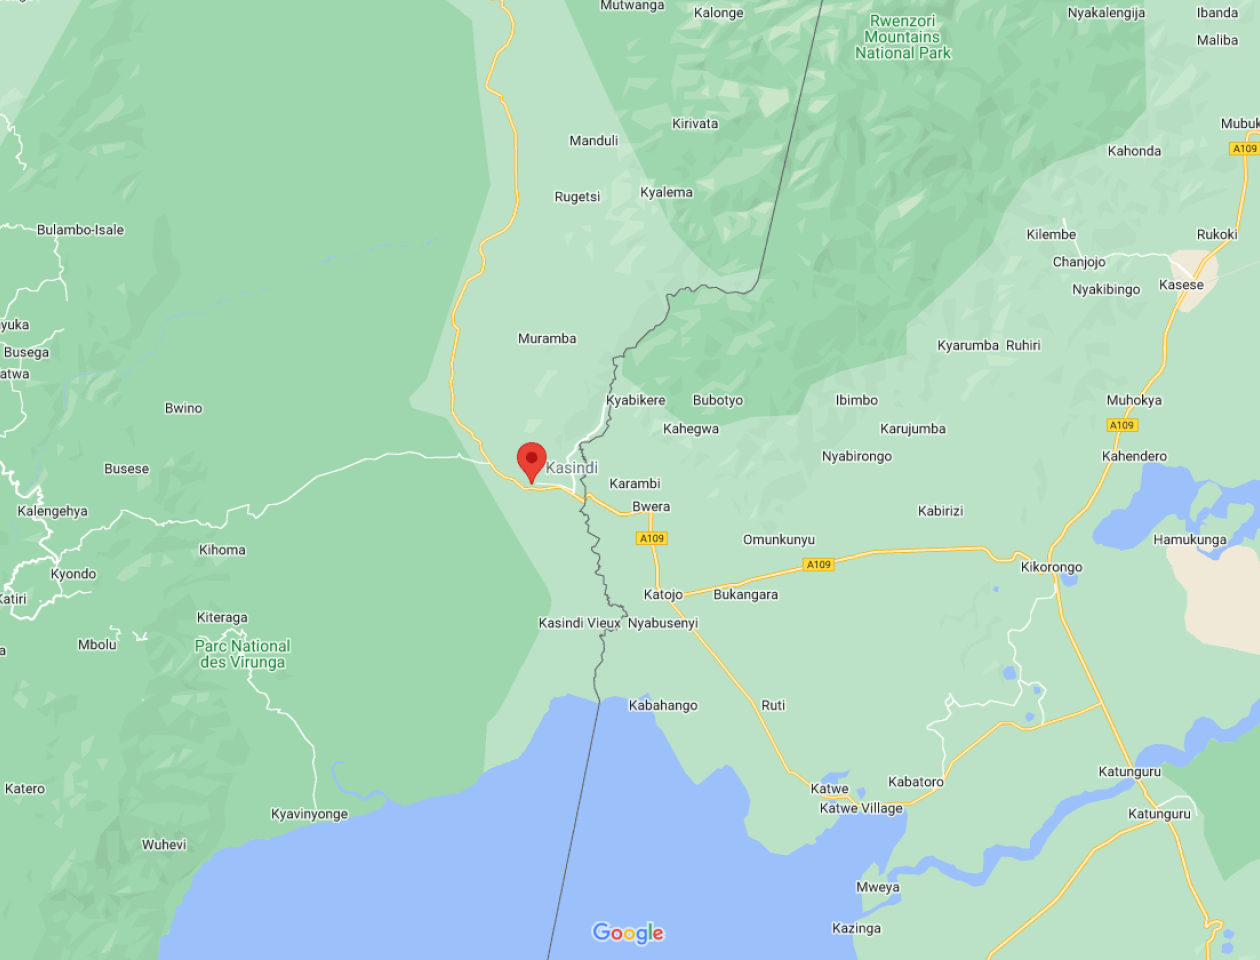 Ville de Kasindi dans le Nord-Kivu, aux frontières de l'Ouganda. Capture d'écran Google Maps.